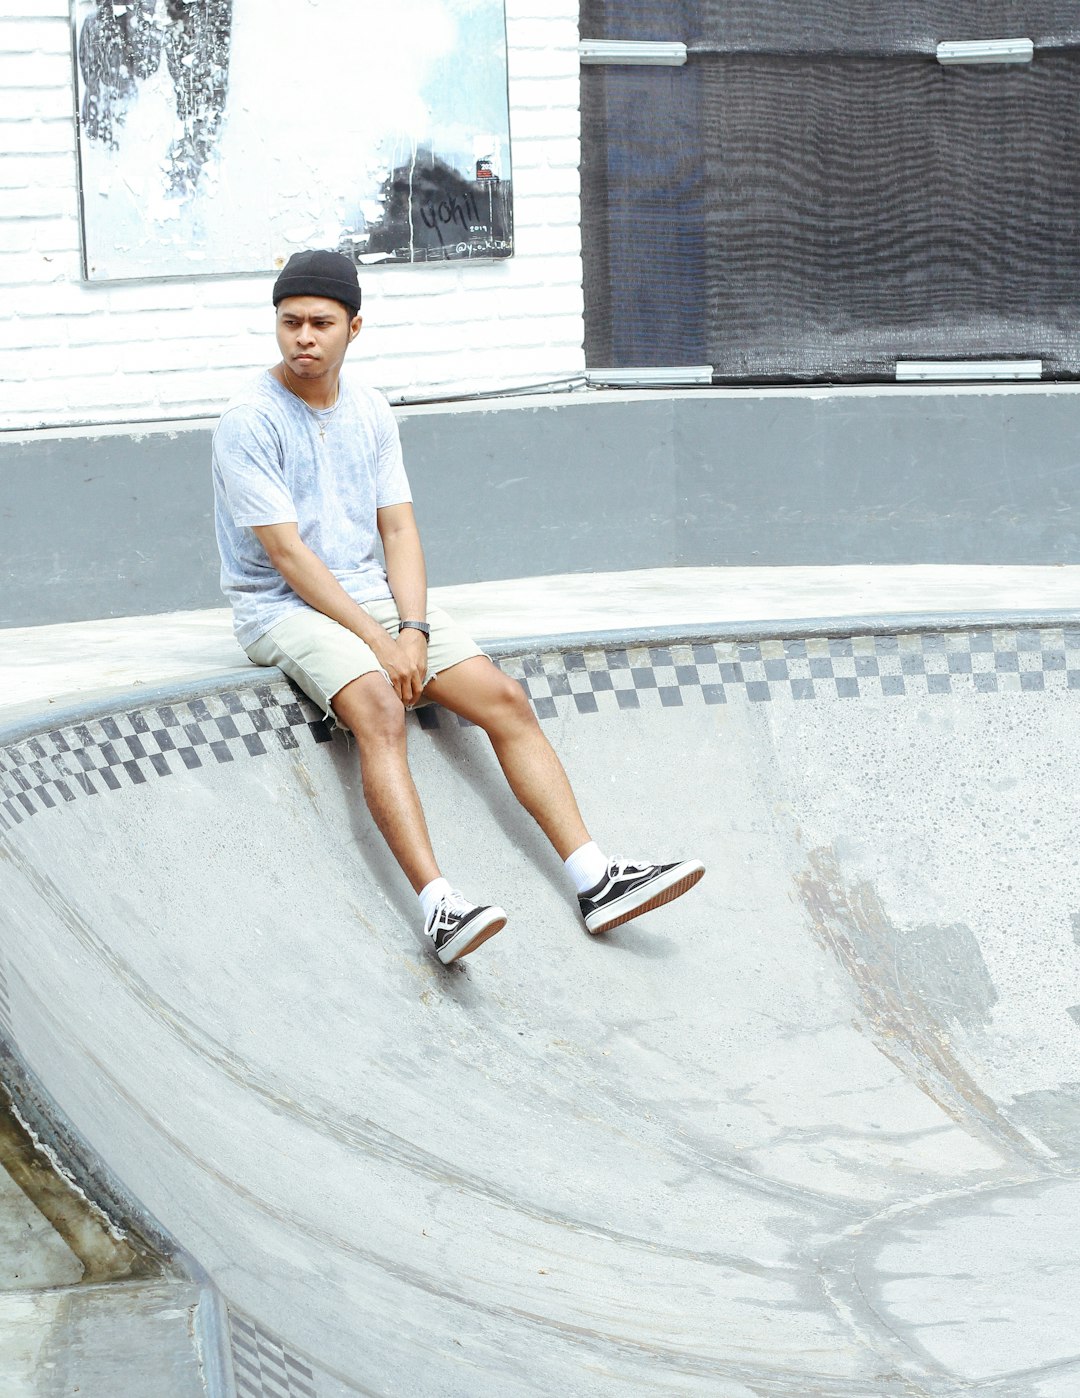 Skateboarding photo spot Tamora Gallery Indonesia